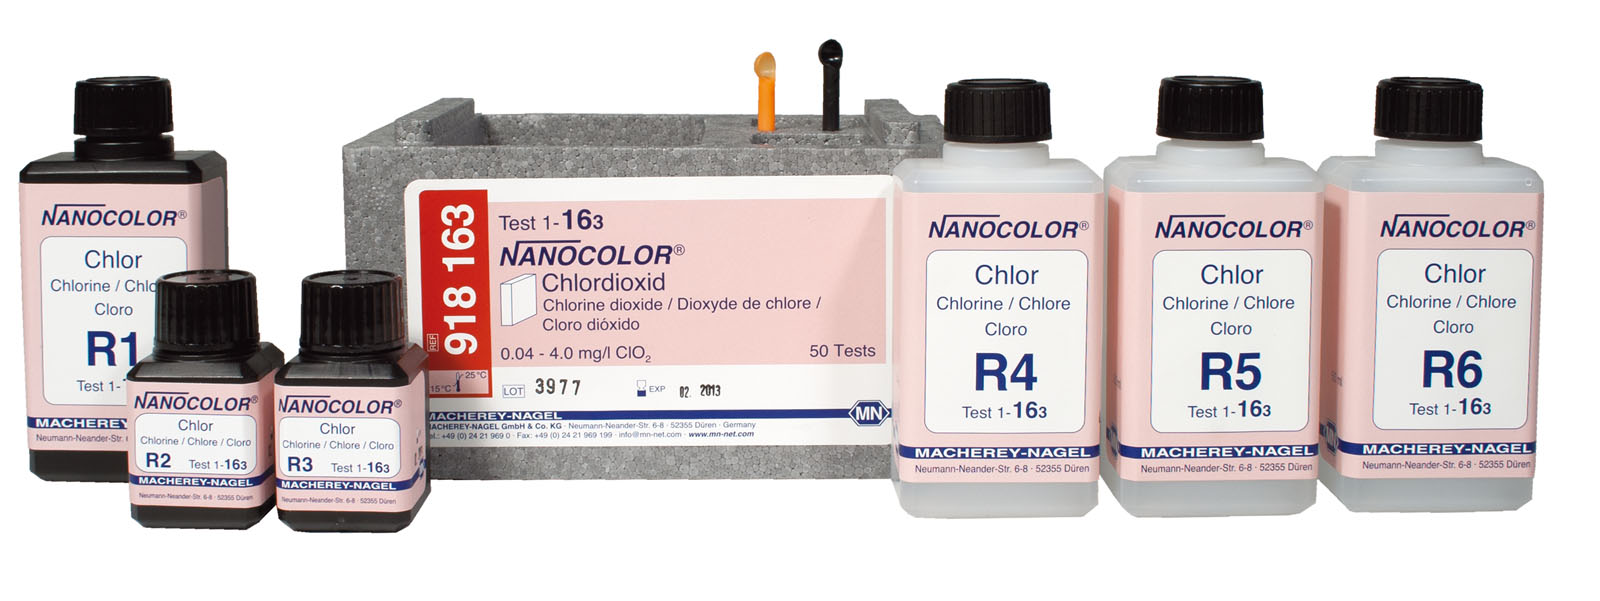 NANOCOLOR® Chlorine Dioxide Standard Test